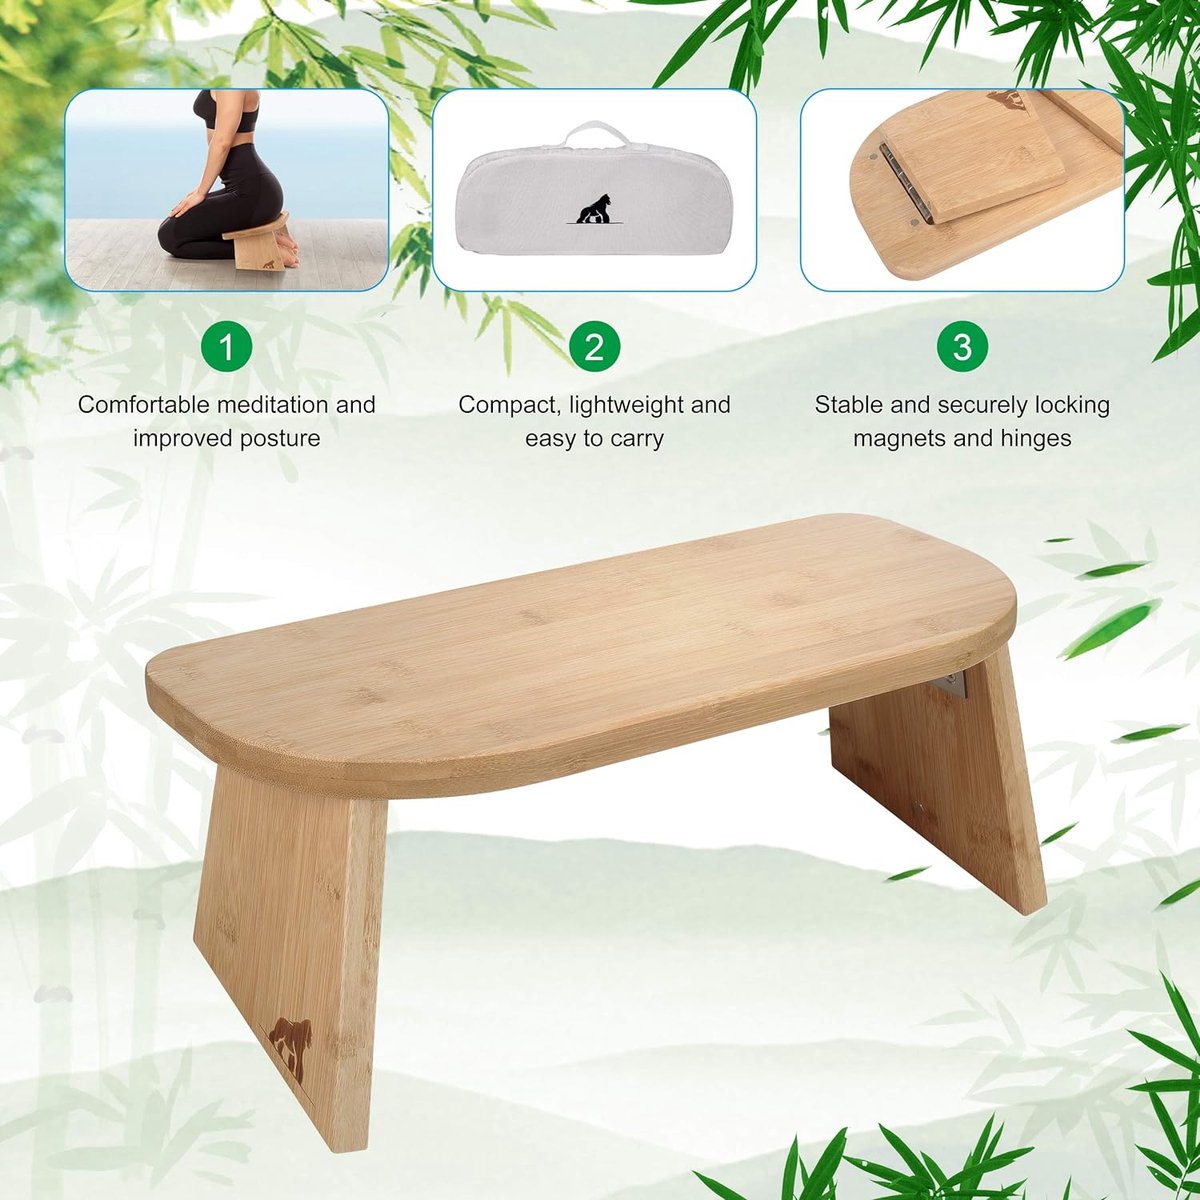 My Fat Gorilla Bench de méditation pliable en Bamboo – Tabouret de Yoga pour